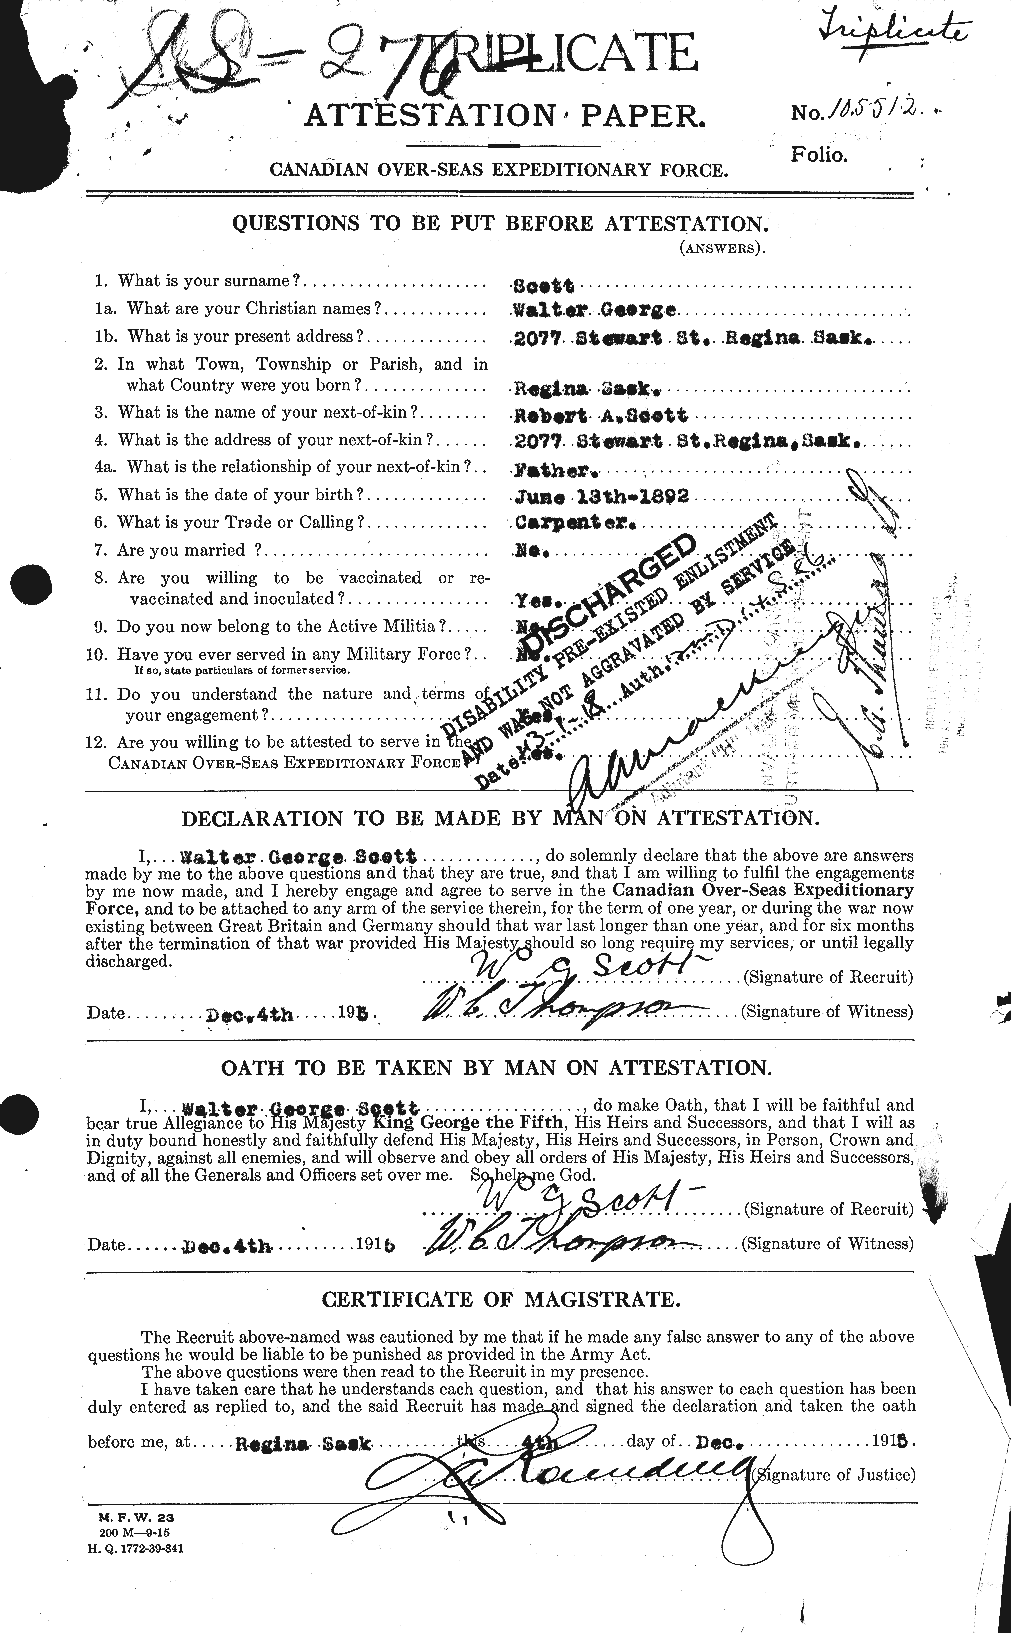 Dossiers du Personnel de la Première Guerre mondiale - CEC 087987a